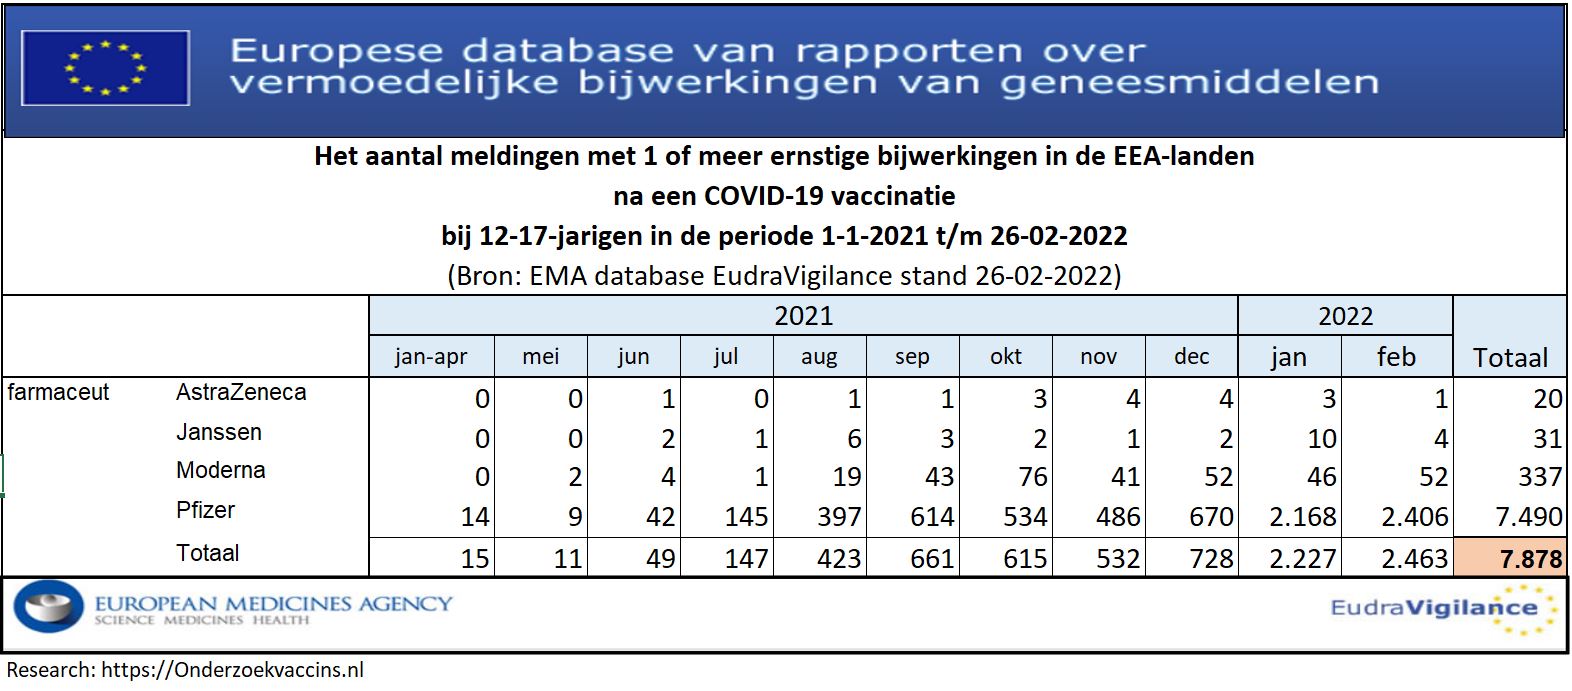 Het aantal meldingen met 1 of meer bijwerkingen in de periode 1-1-2021 t/m 26-2-2022 na een COVID-19 injectie bij 12 t/m 17-jarigen in de EEA-landen